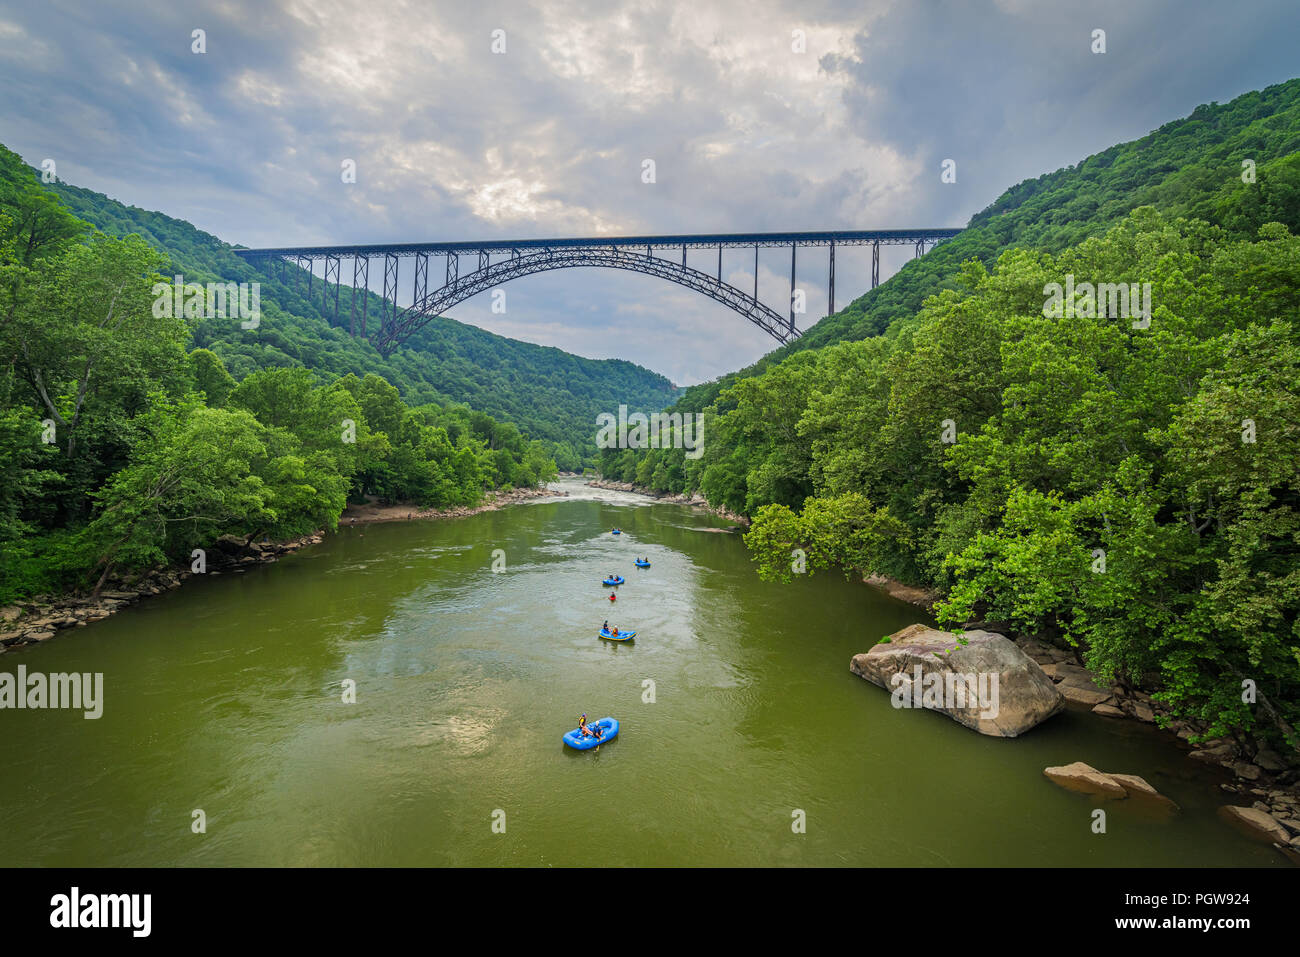 Vigas de agua blanca flotar por el New River Gorge en Virginia Occidental bajo el puente de arco de acero grande. Foto de stock